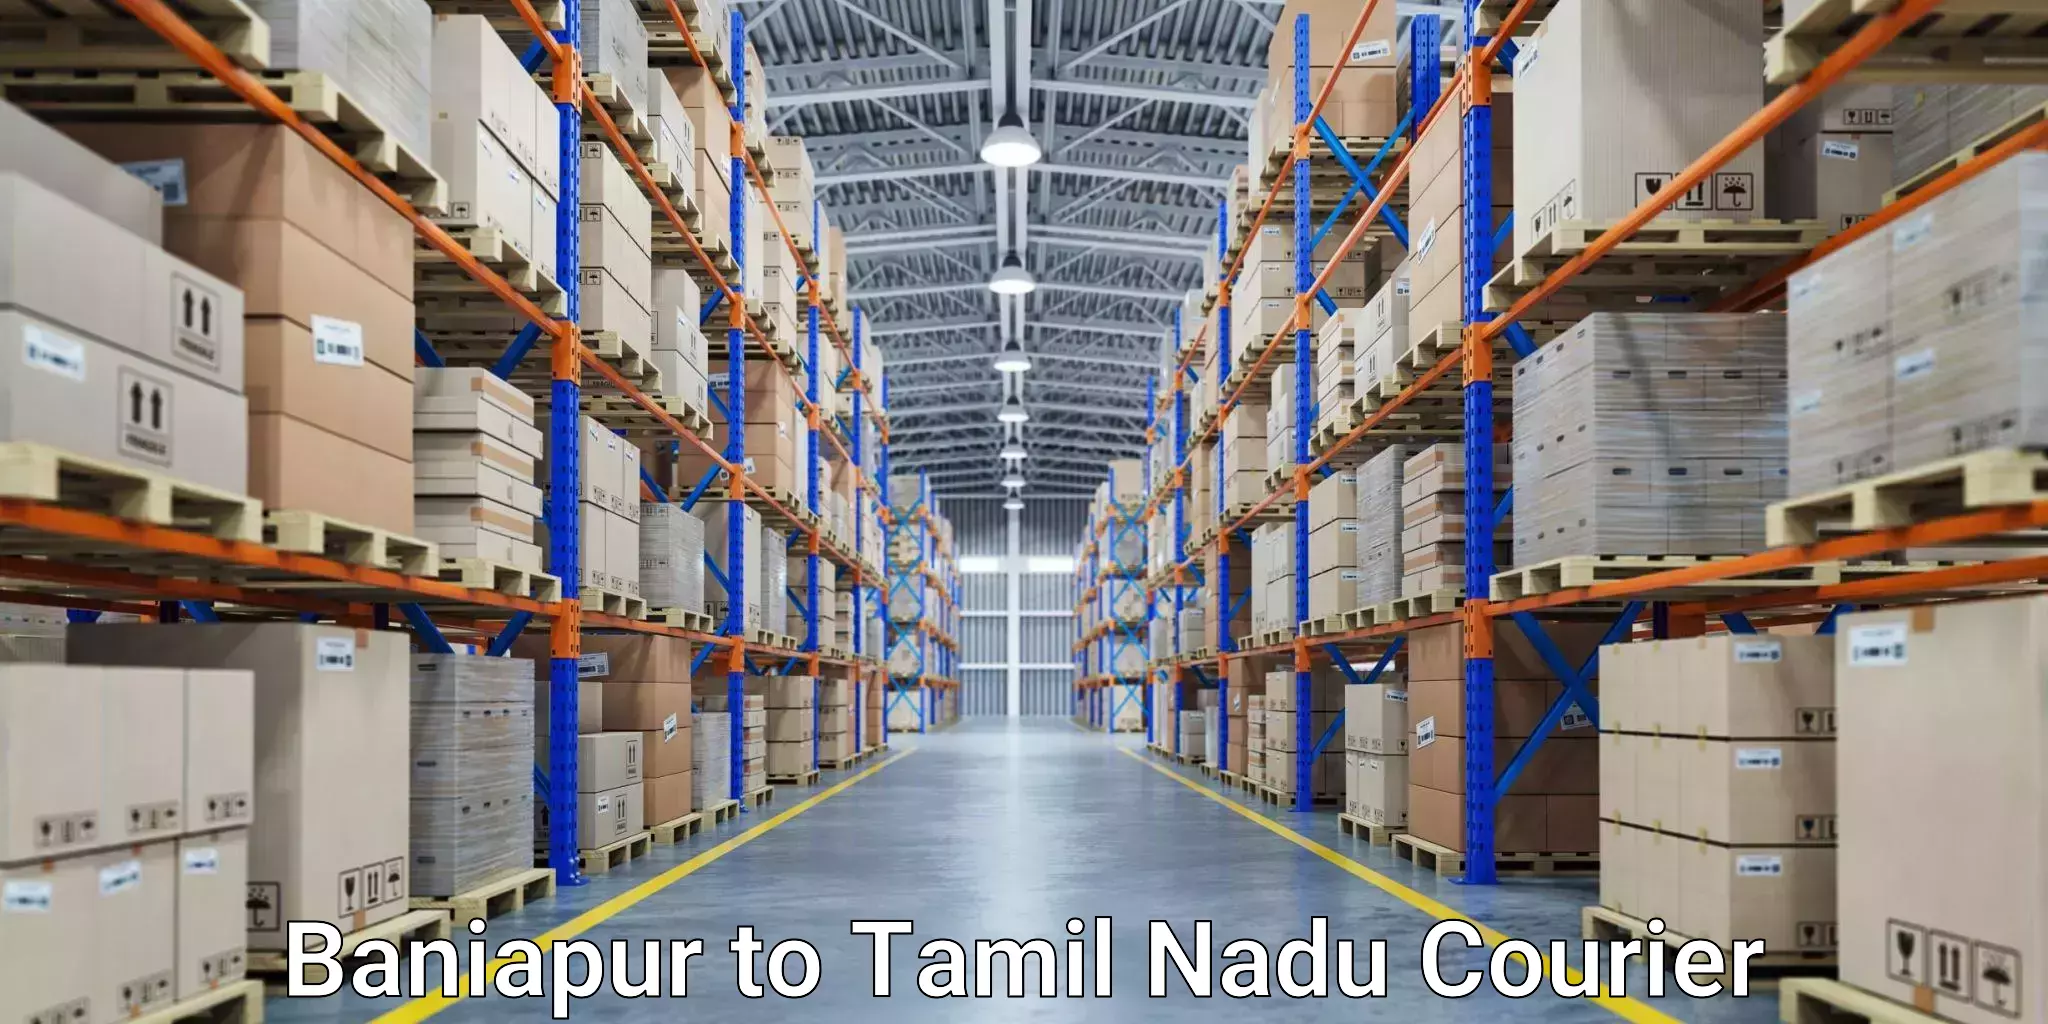 Digital courier platforms Baniapur to Tamil Nadu Veterinary and Animal Sciences University Chennai